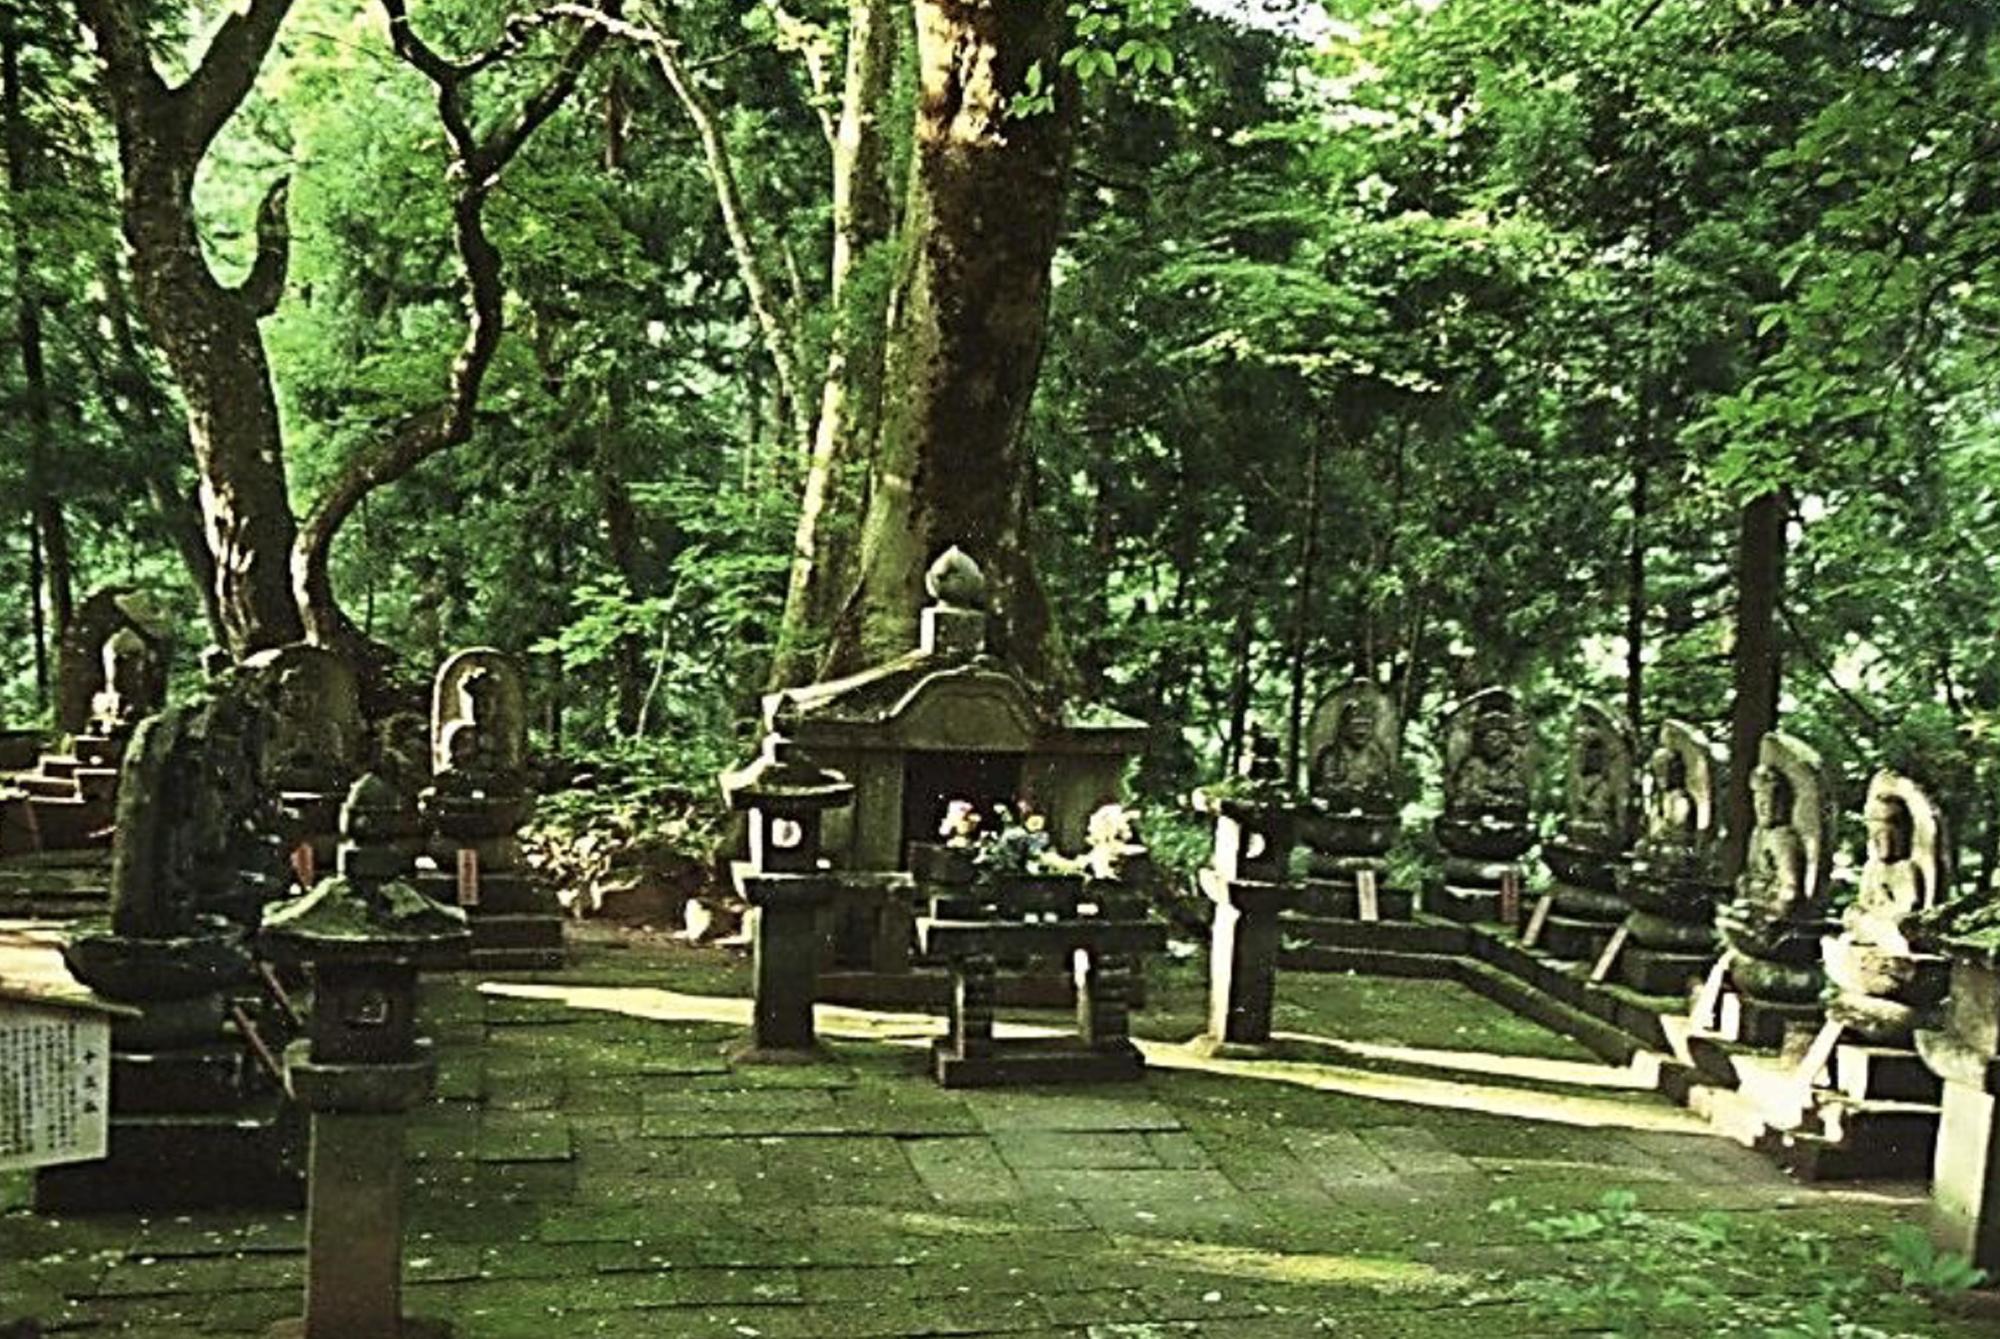 写真いっぱいに広がっている、苔むしたような緑の木々の景色。中央には石の祠の建造物があり、周りを囲むようにして鉢の台座に座る石仏のある境内の写真